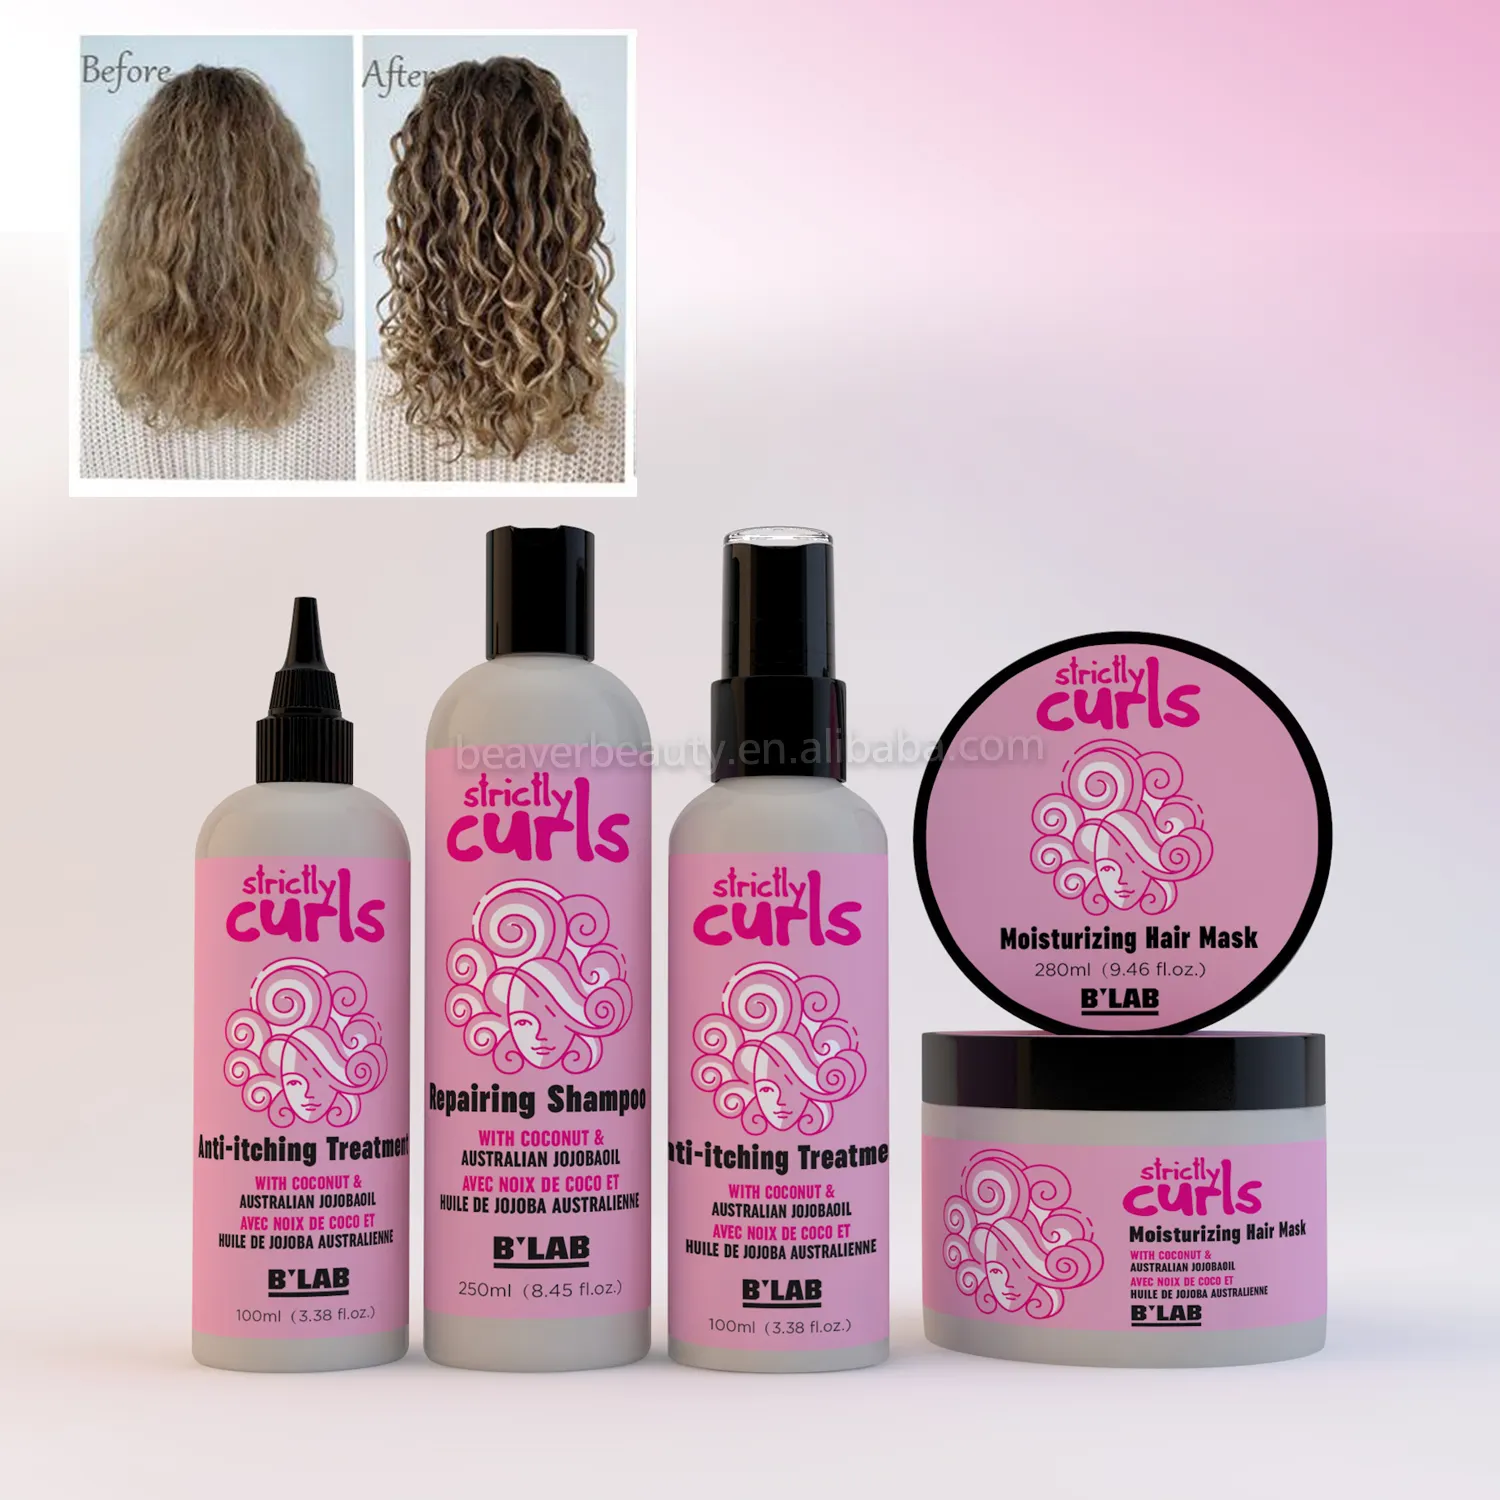 Private Label Curly Hair Care Curl Enhancers für Perücken und Gewebe Curl Defining Cream Activator Moist urize 4c Curl Enhancers